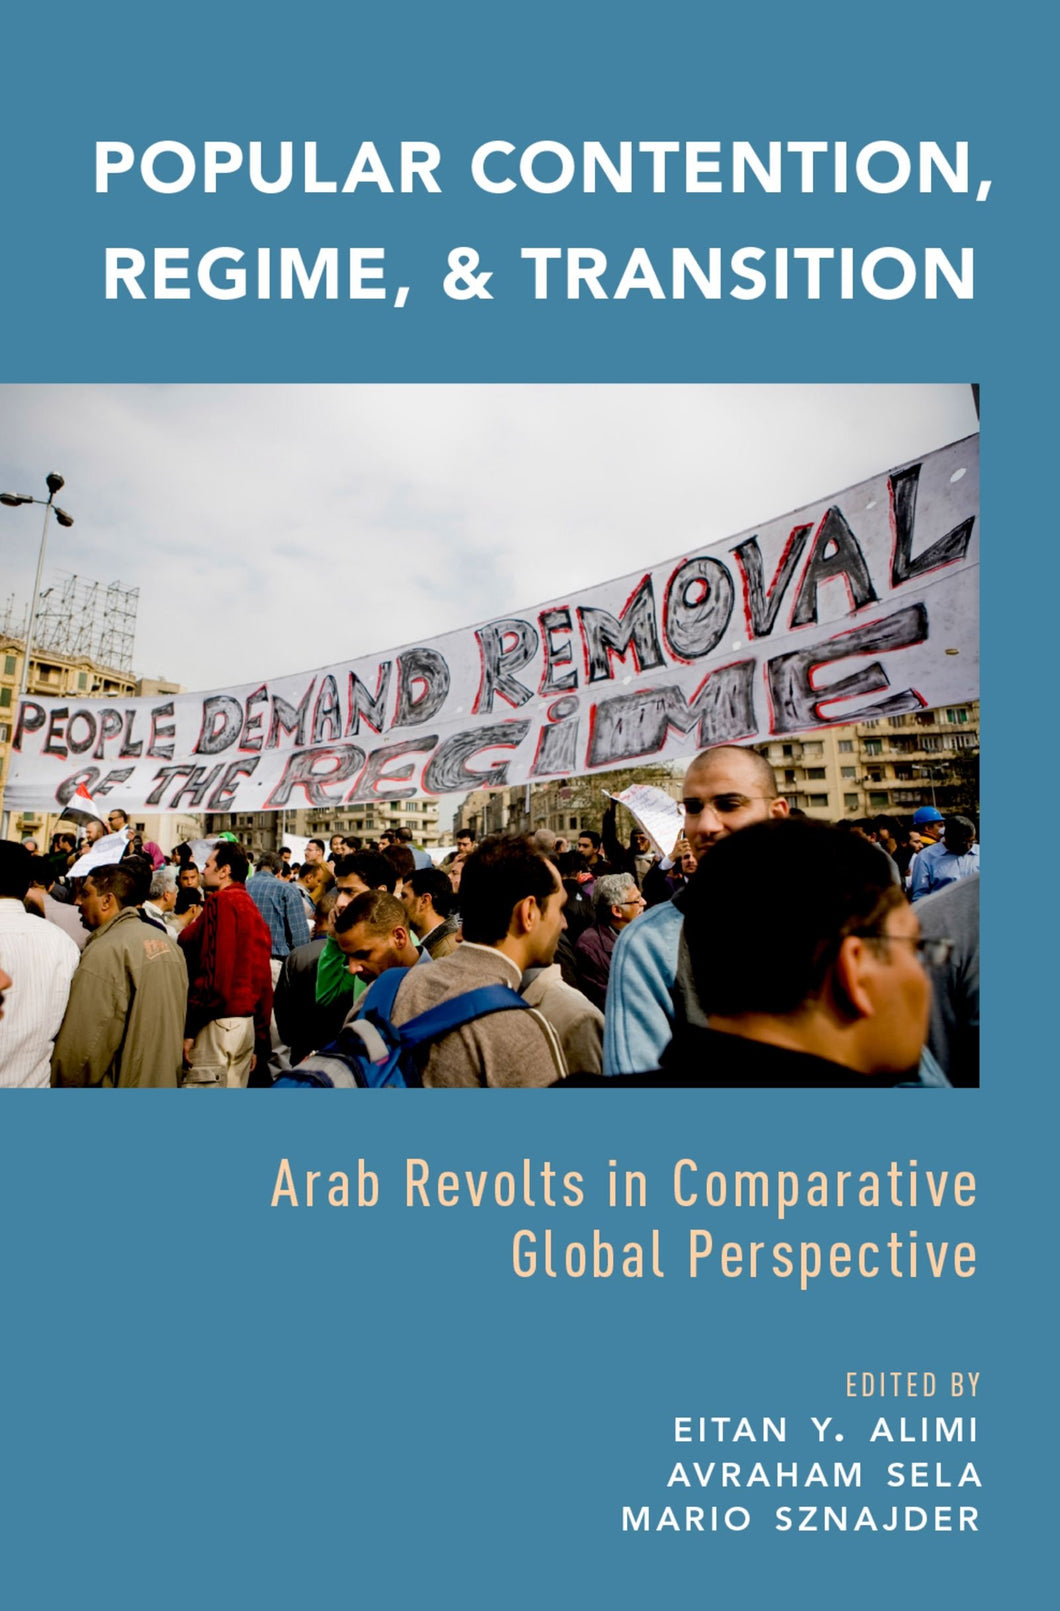 Popular Contention, Regime, and Transition : Arab Revolts in Comparative Global Perspective ร้านหนังสือและสิ่งของ เป็นร้านหนังสือภาษาอังกฤษหายาก และร้านกาแฟ หรือ บุ๊คคาเฟ่ ตั้งอยู่สุขุมวิท กรุงเทพ